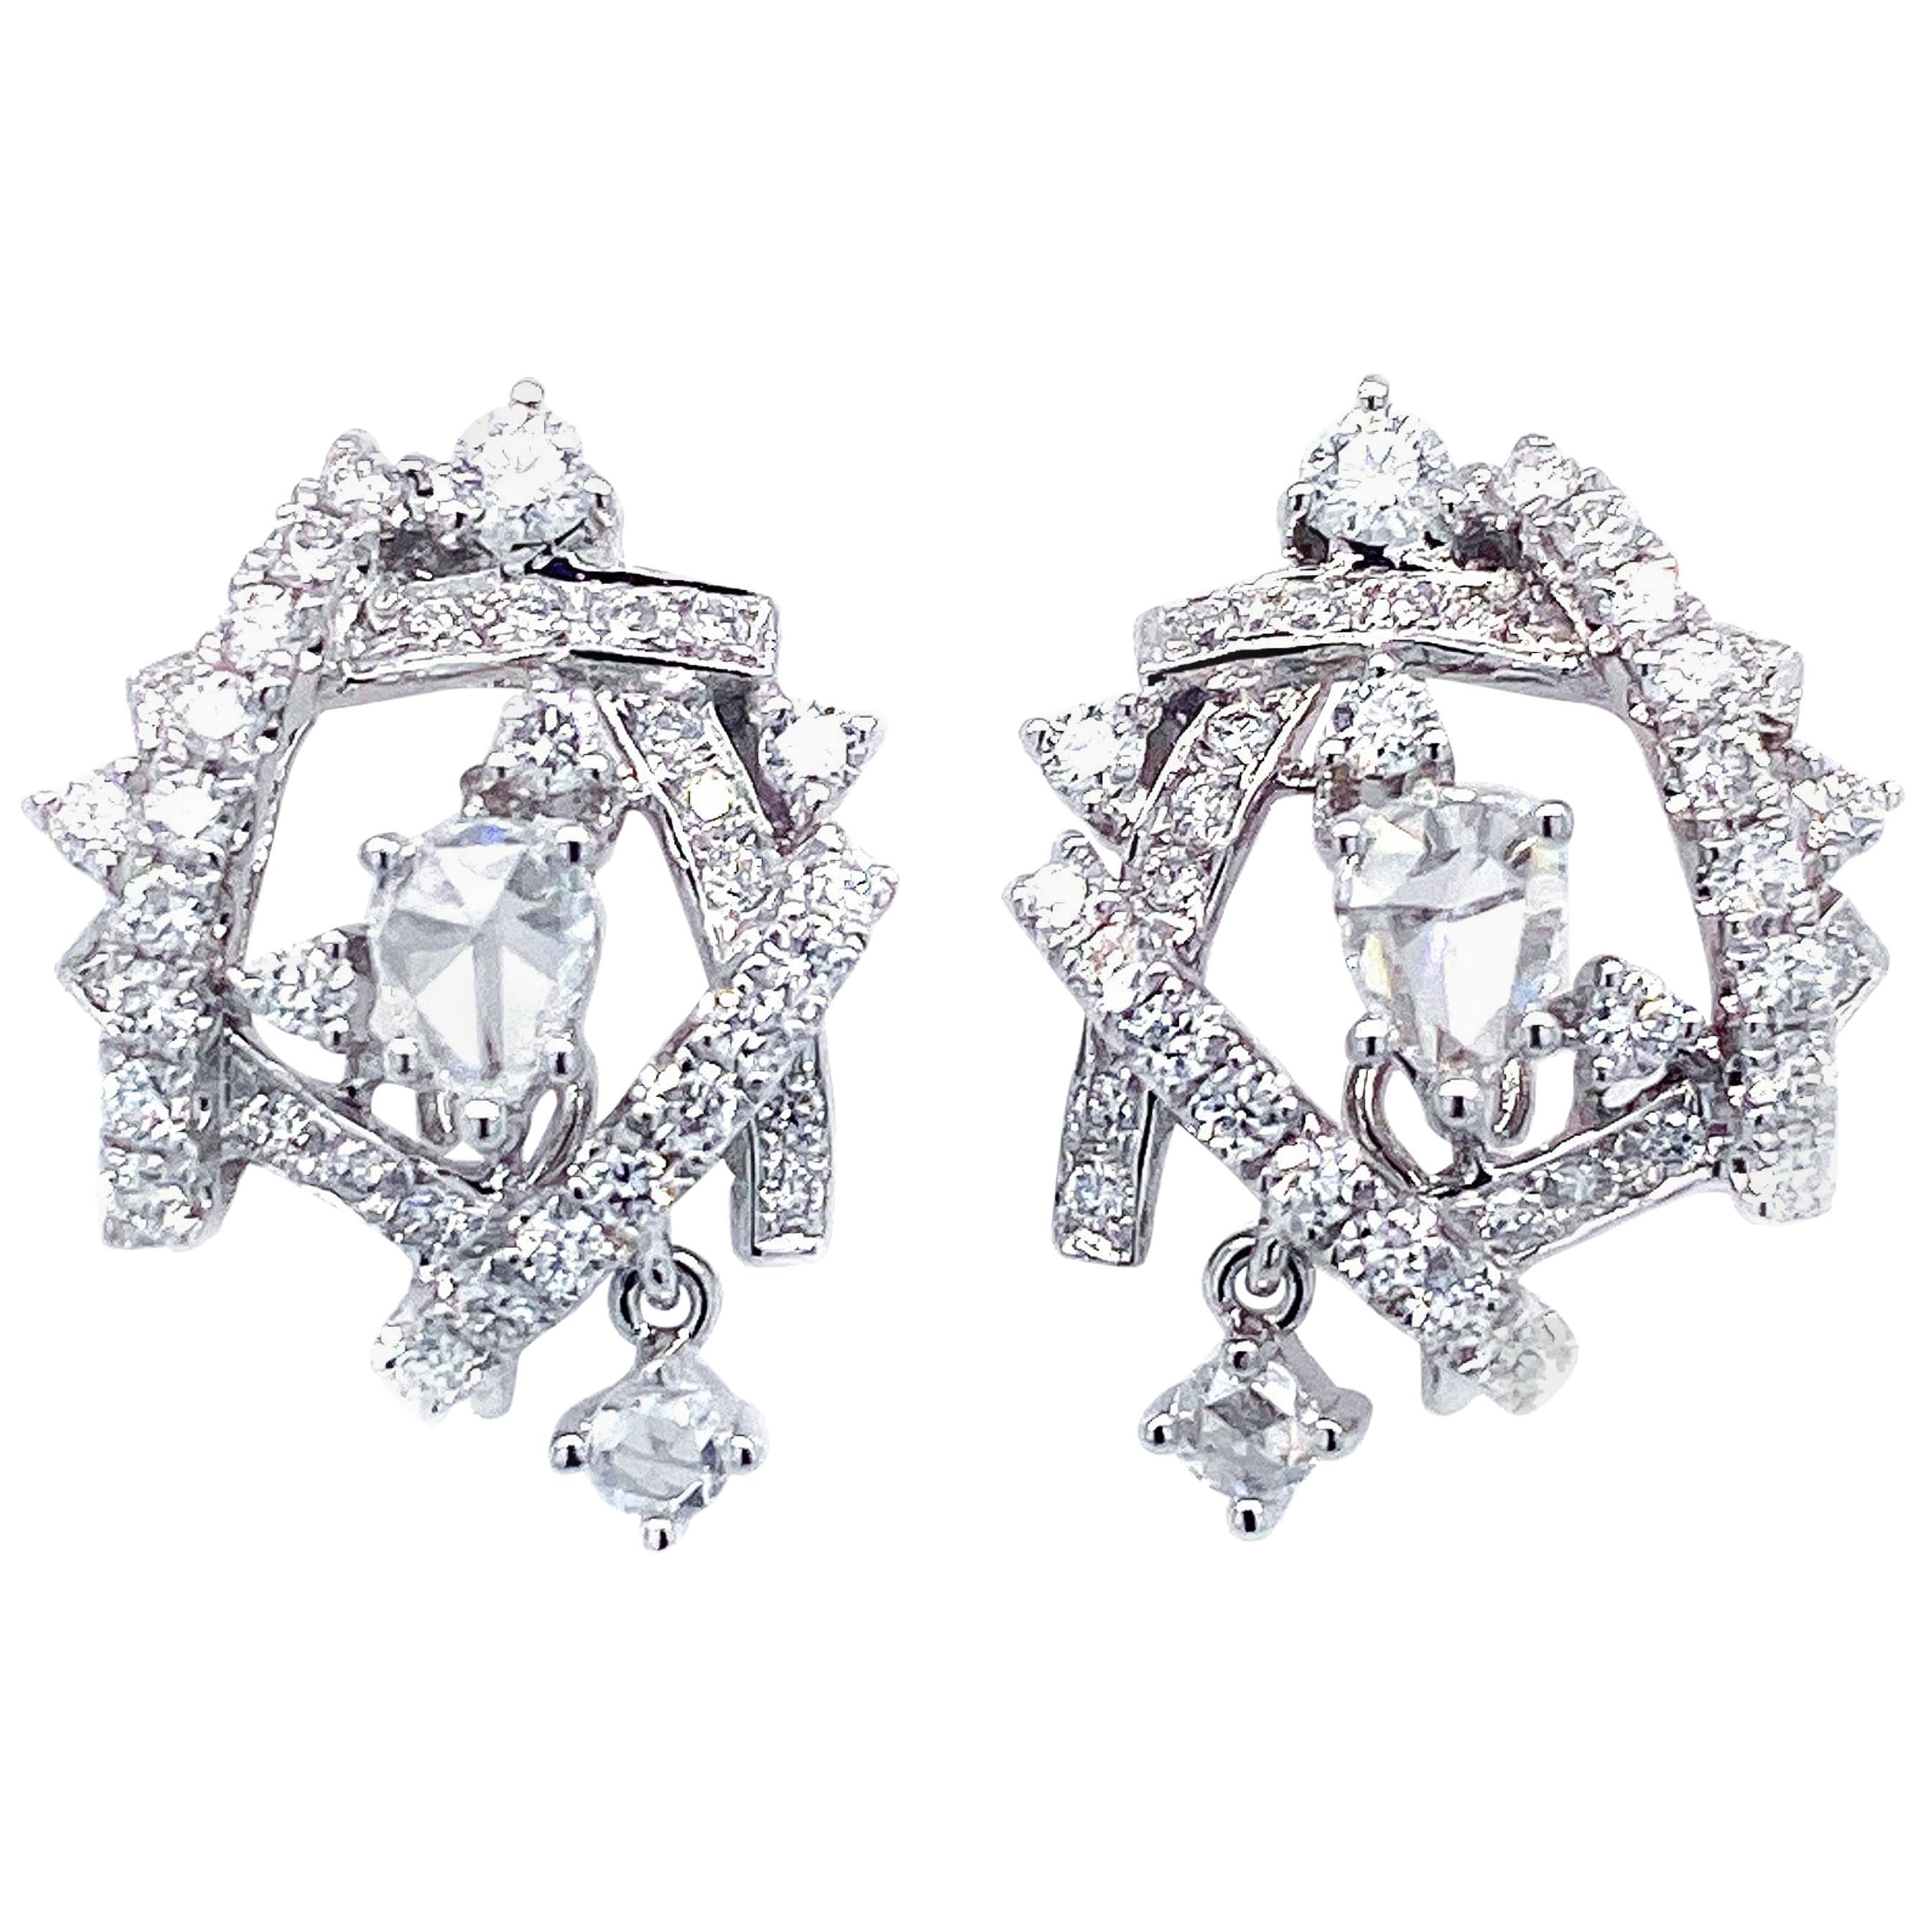 Interlaced White Diamond Earrings in 18 Karat White Gold